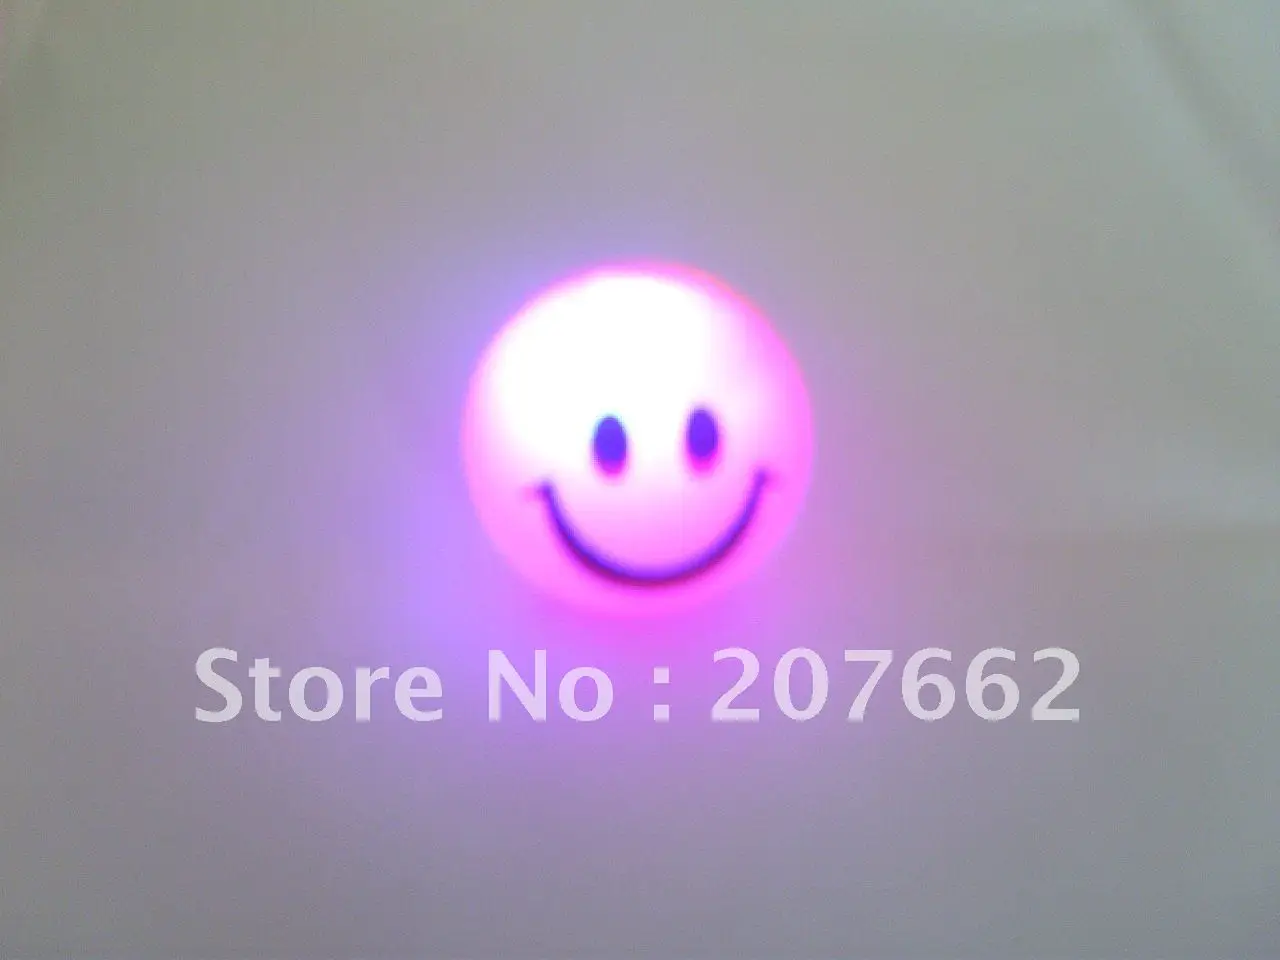 12 шт./лот 4 см резиновые изменение цвета со светодиодной подсветкой надувной мяч мигает улыбающееся лицо светодиод мигает игрушка для детская